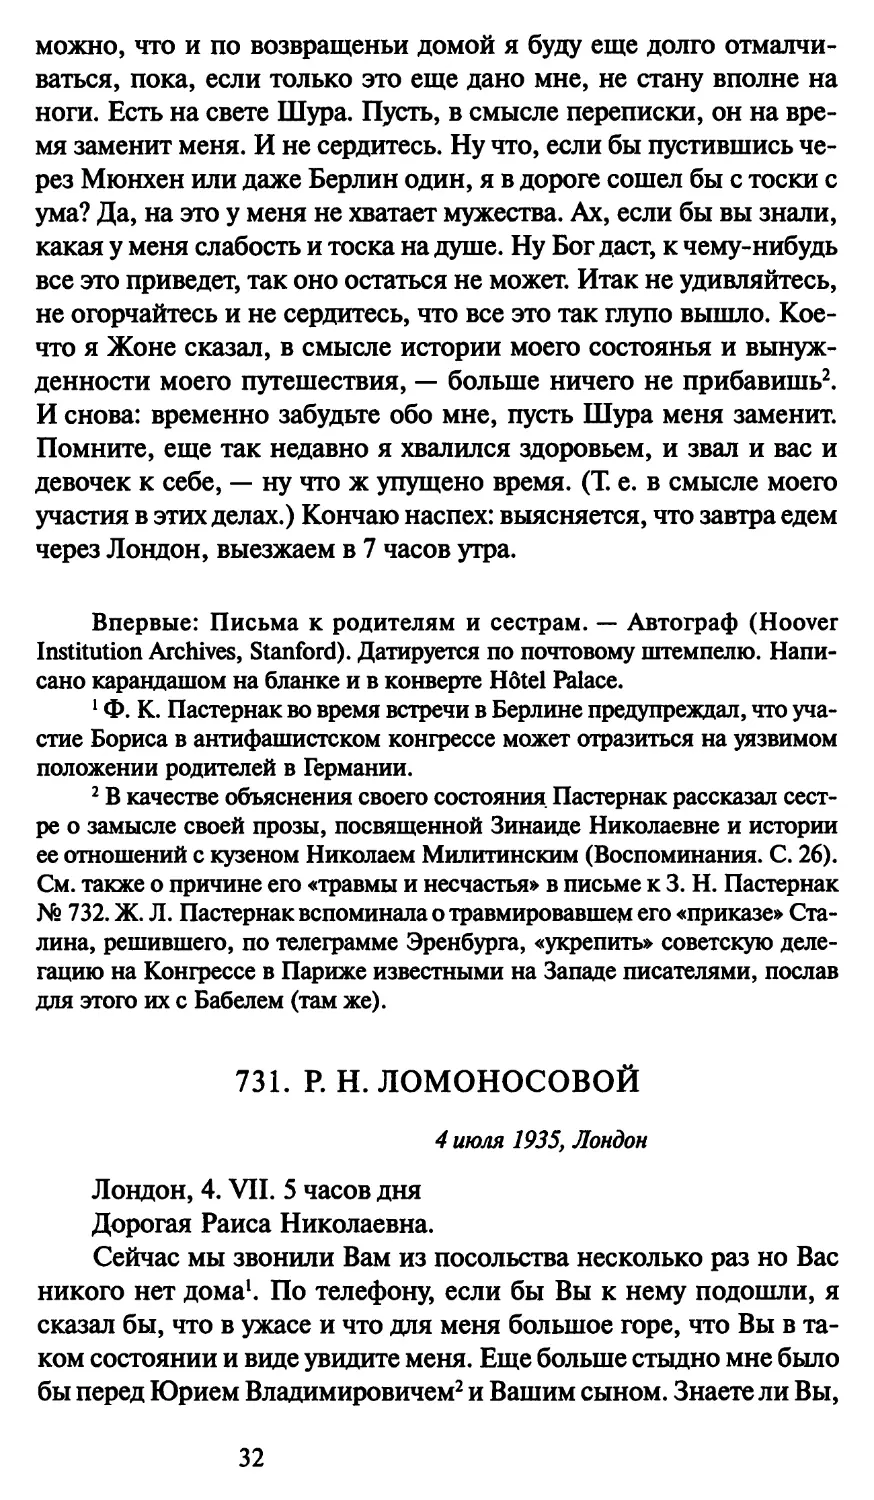 731. Р. Н. Ломоносовой 4 июля 1935